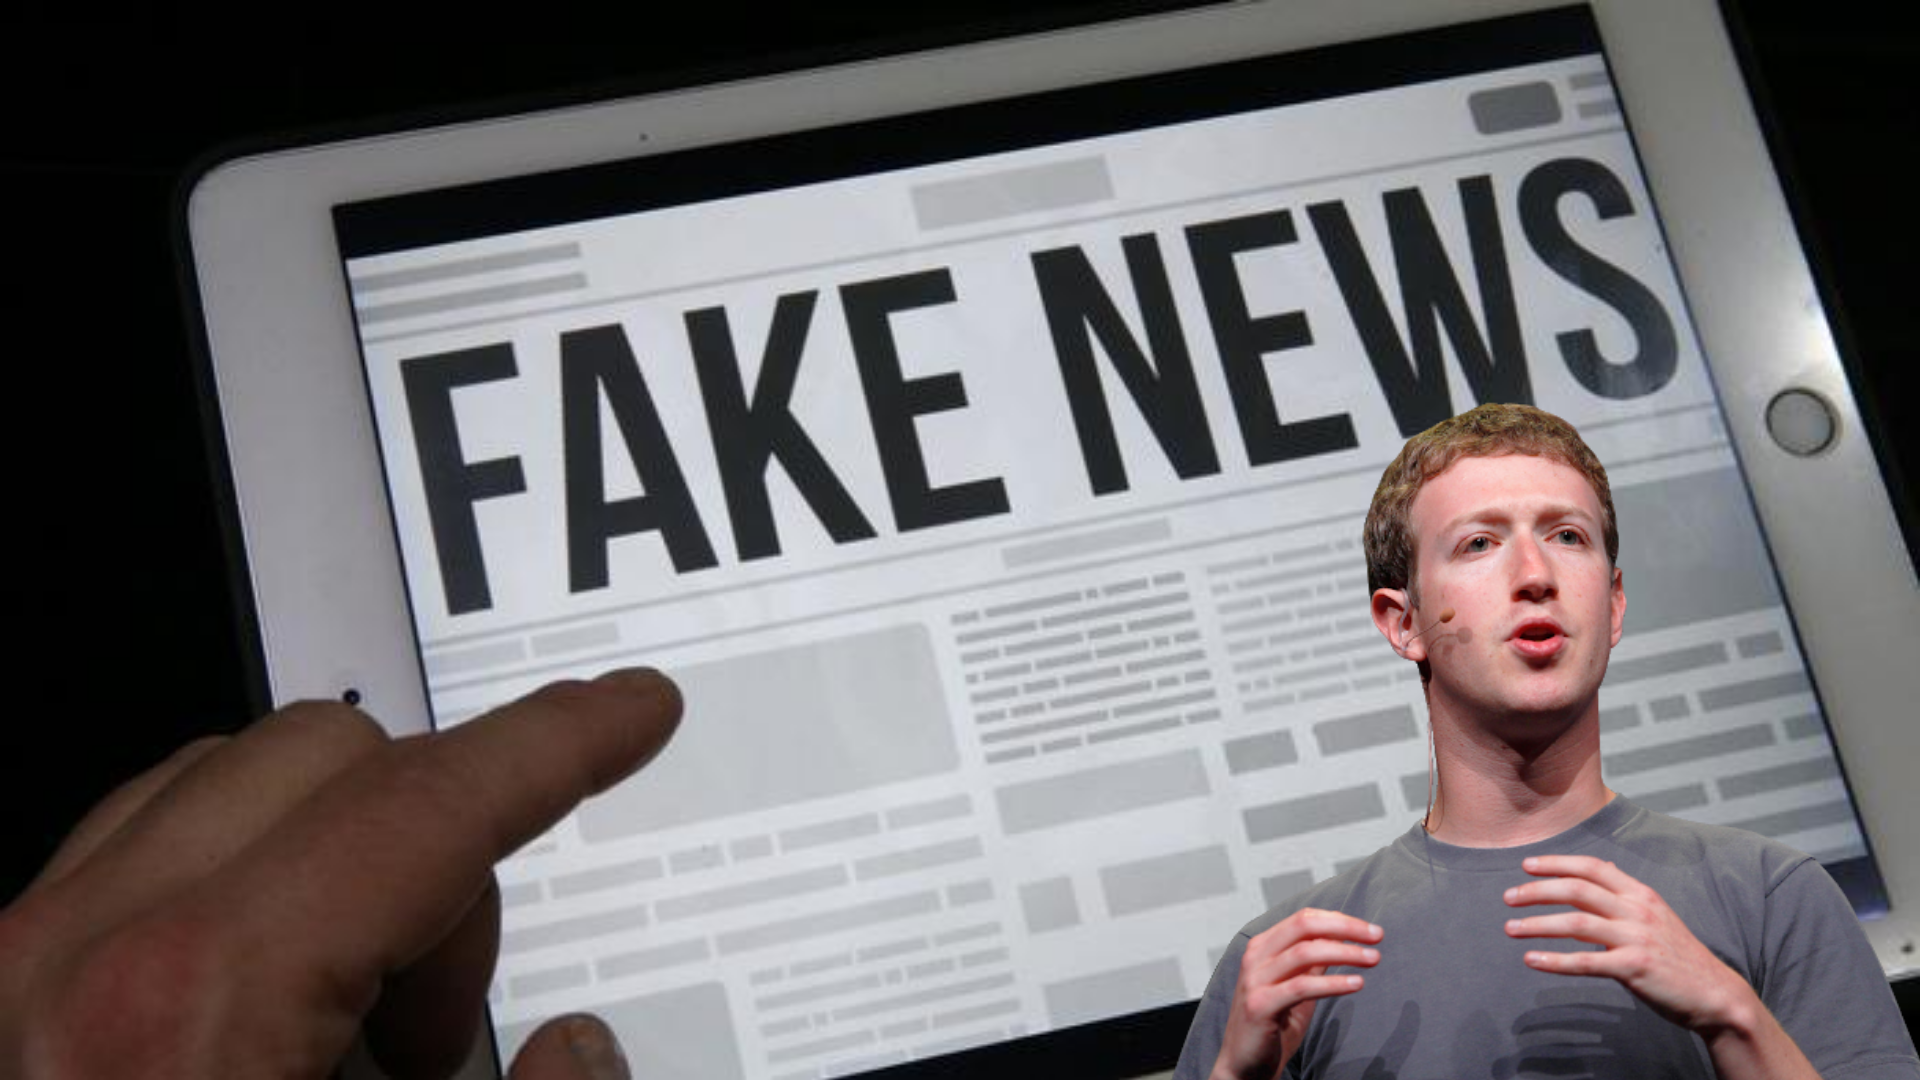 Nudes, Fake News e Mark Zuckerberg: O quanto você está seguro nas redes sociais?